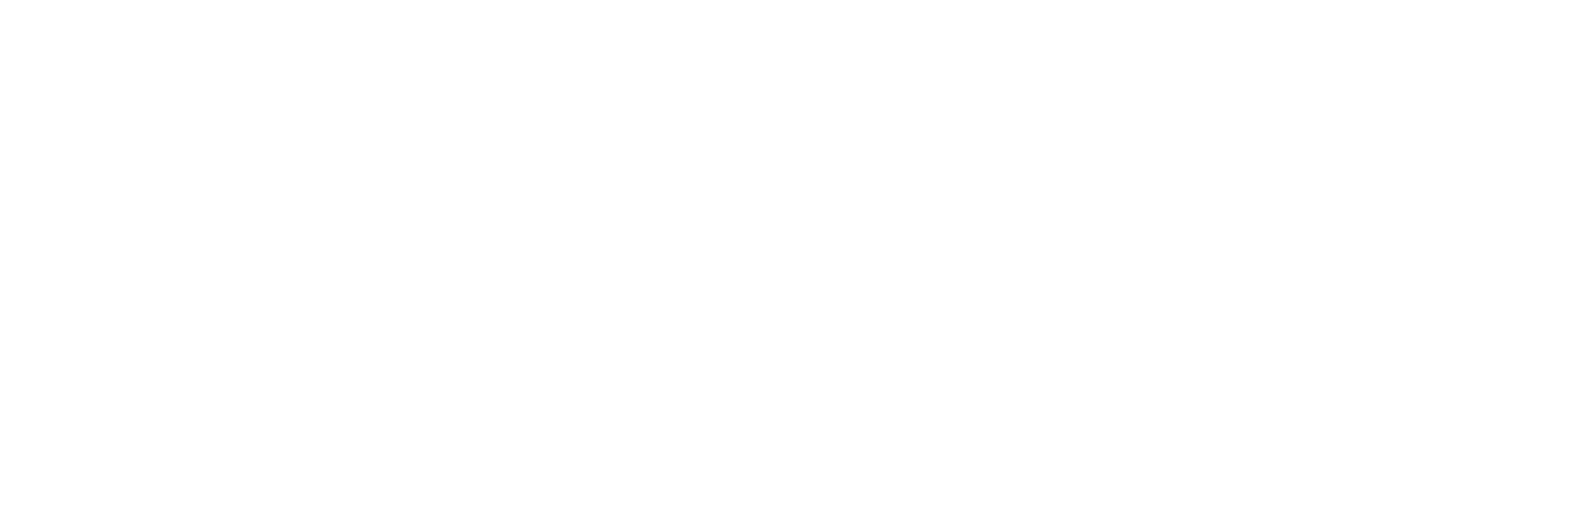 Oakworth Capital Bank Logo